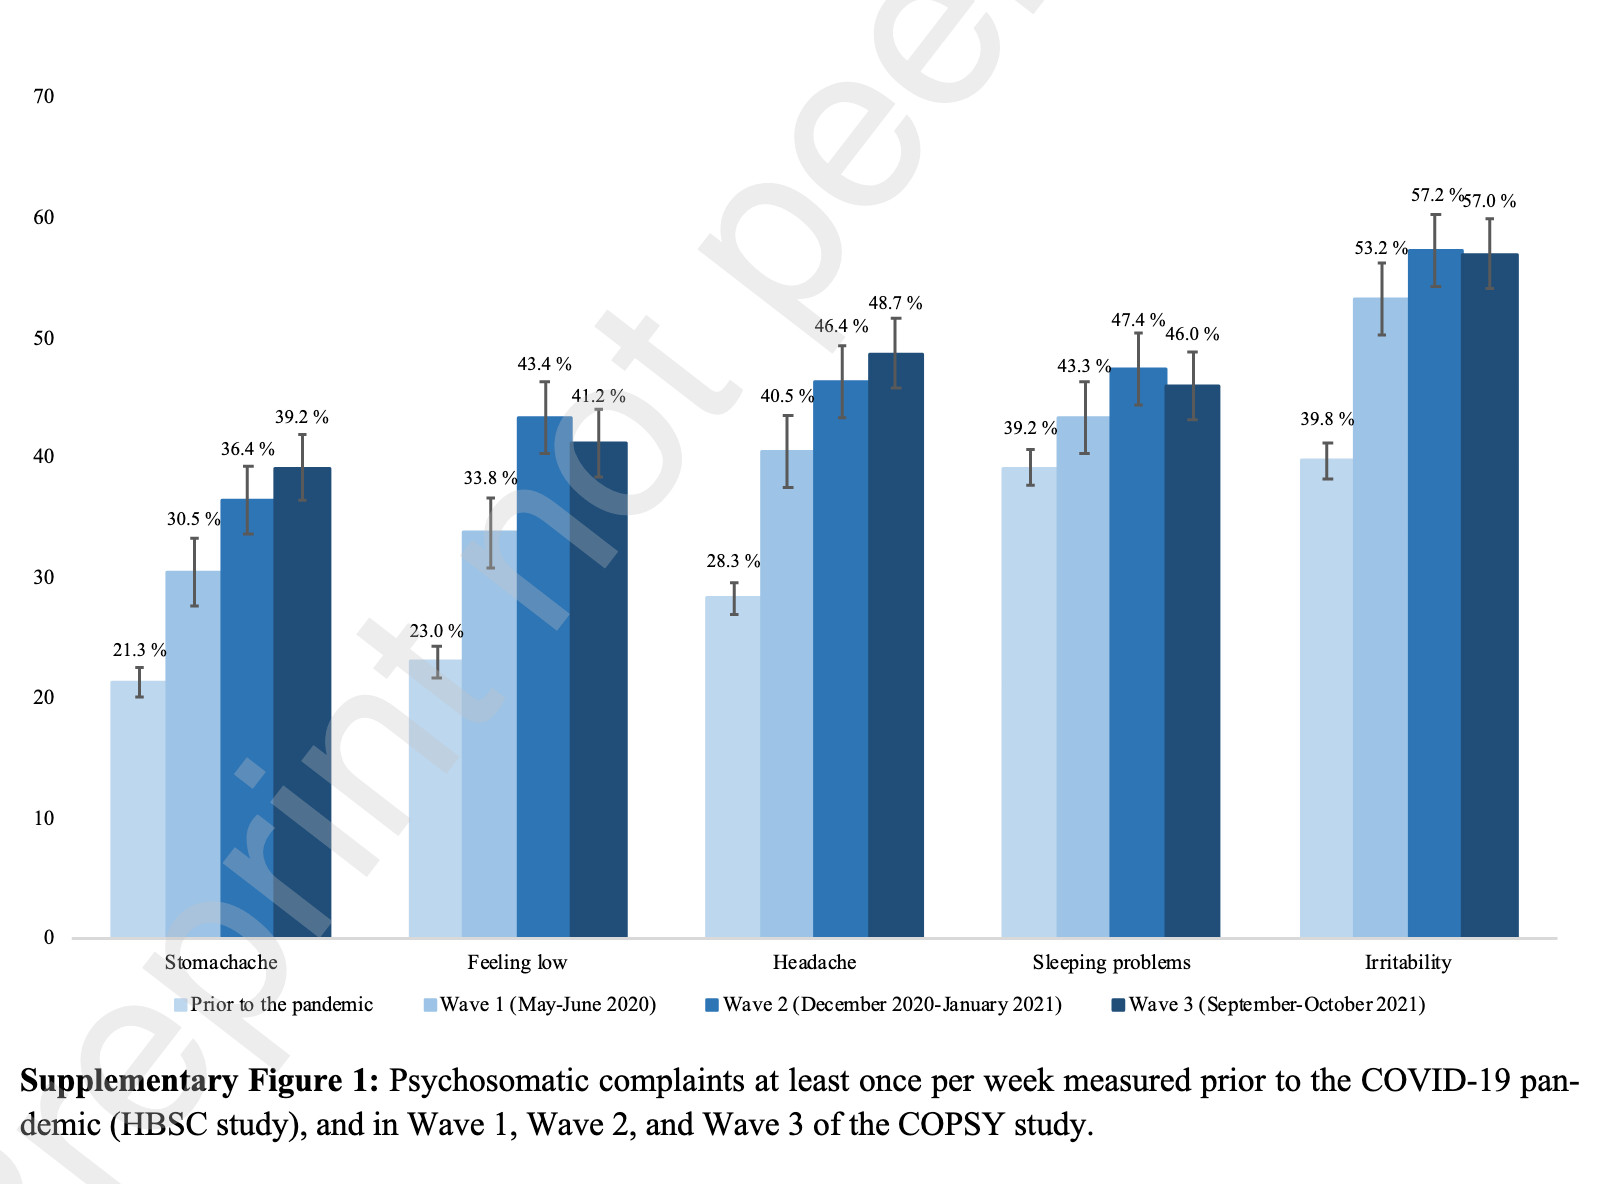 Supplementary Figure 1 der COPSY-Studie: Psychosomatische Beschwerden im Vergleich zwischen den vier betrachteten Phasen